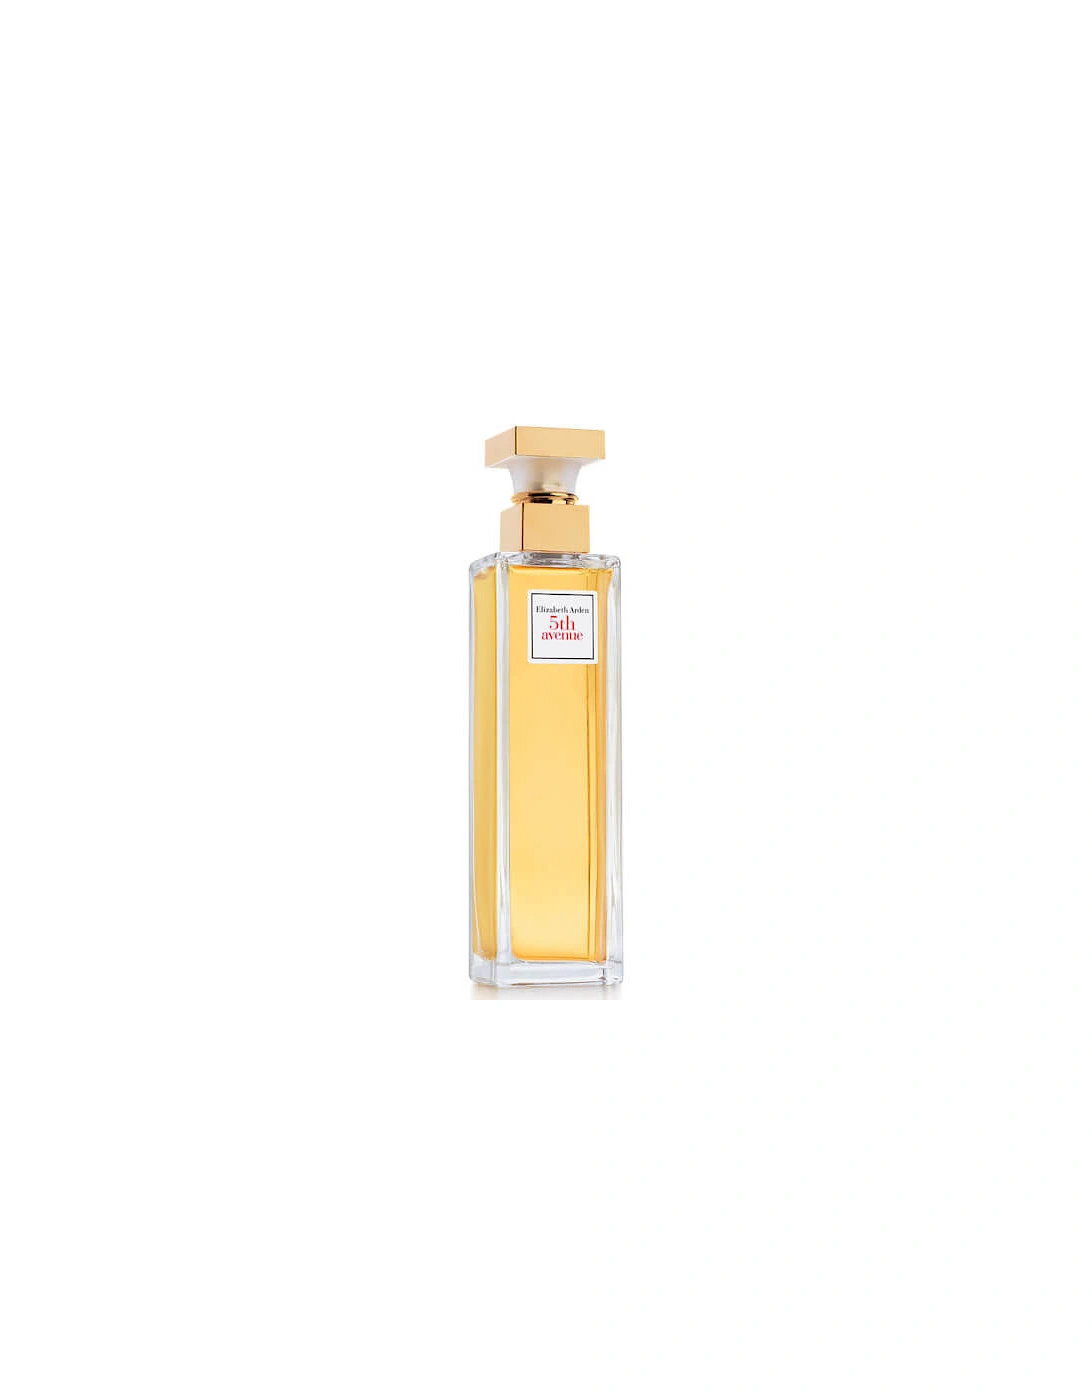 5th Avenue Eau de Parfum 125ml - Elizabeth Arden, 2 of 1